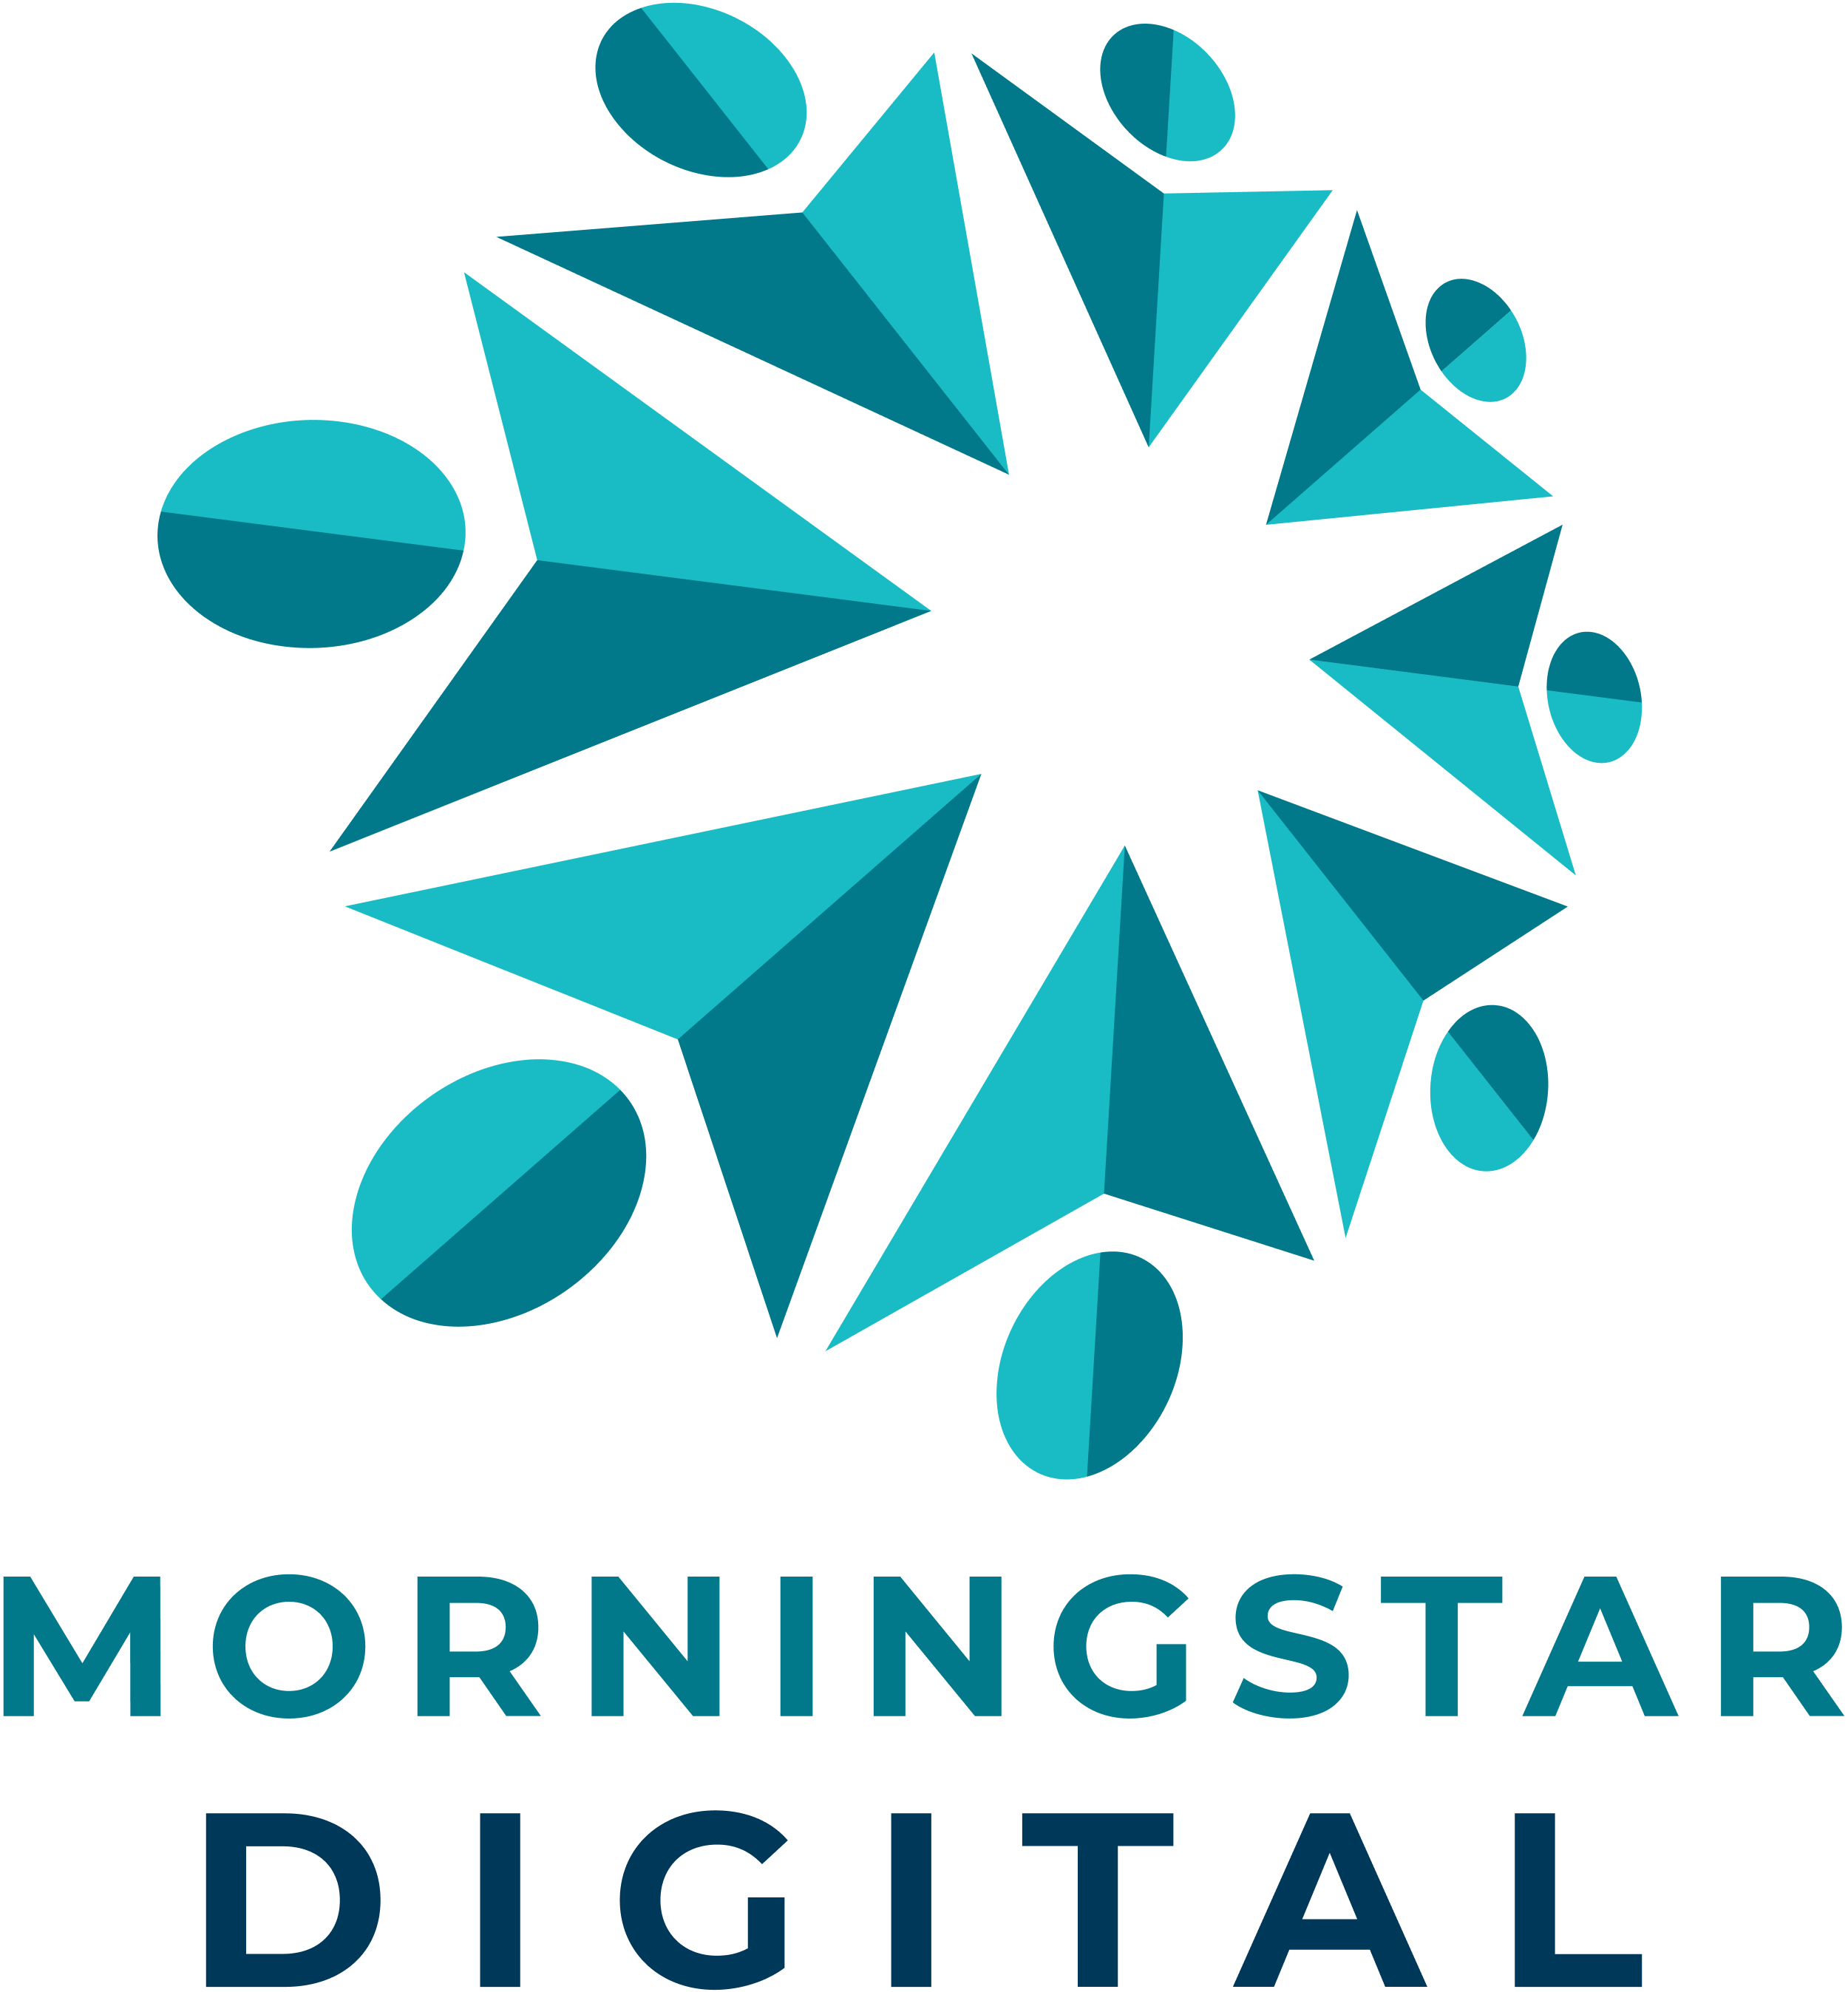 Morningstar Digital Vertical 2500